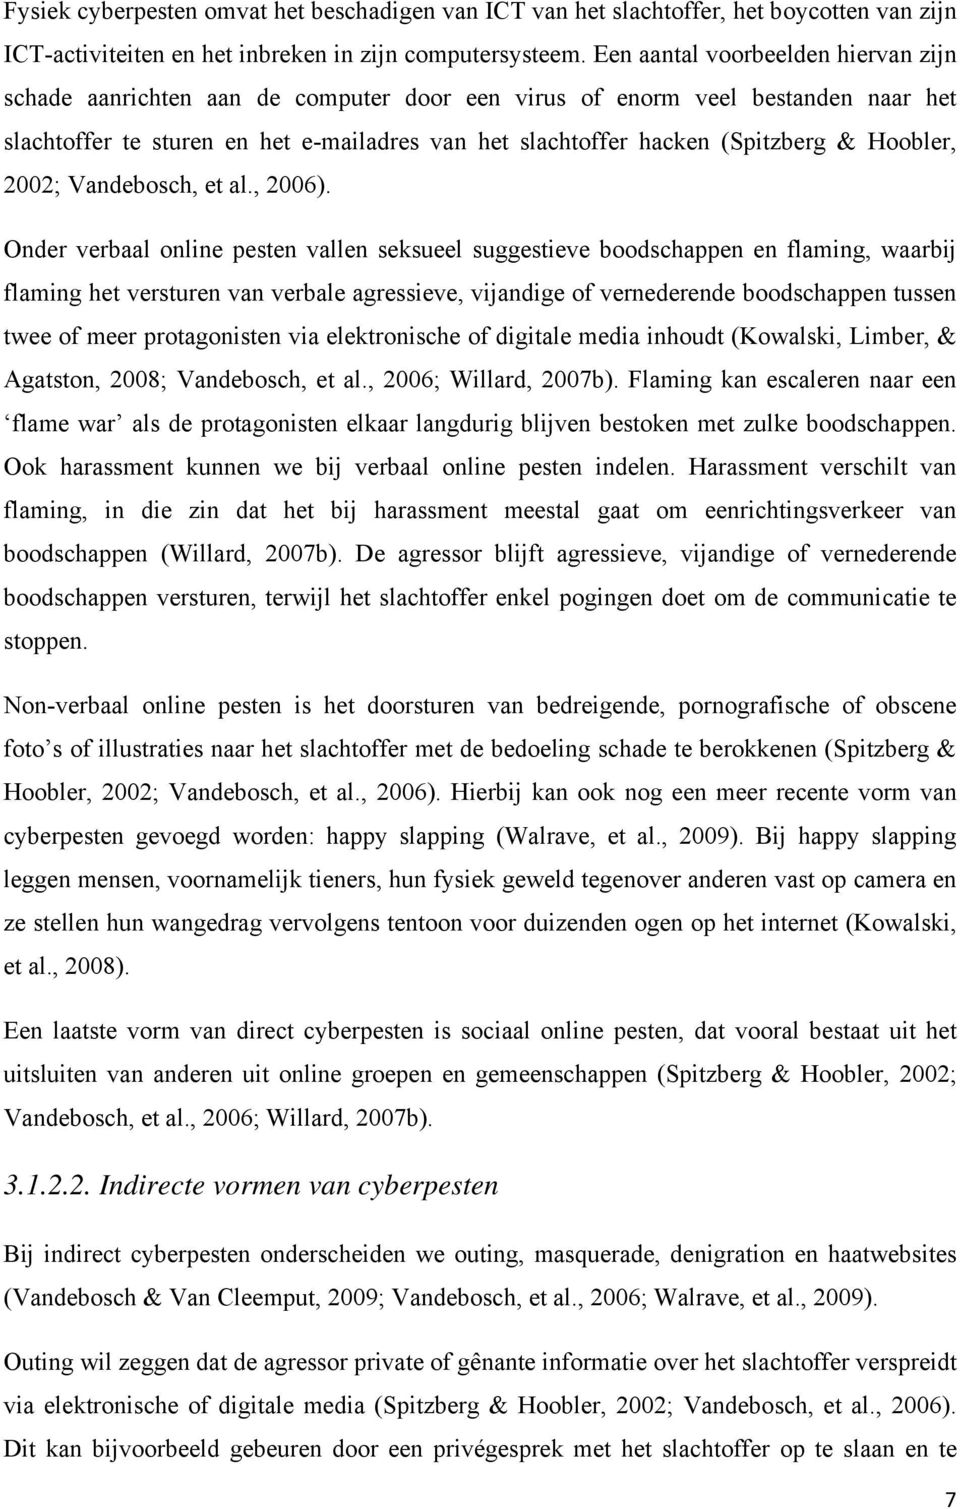 Hoobler, 2002; Vandebosch, et al., 2006).